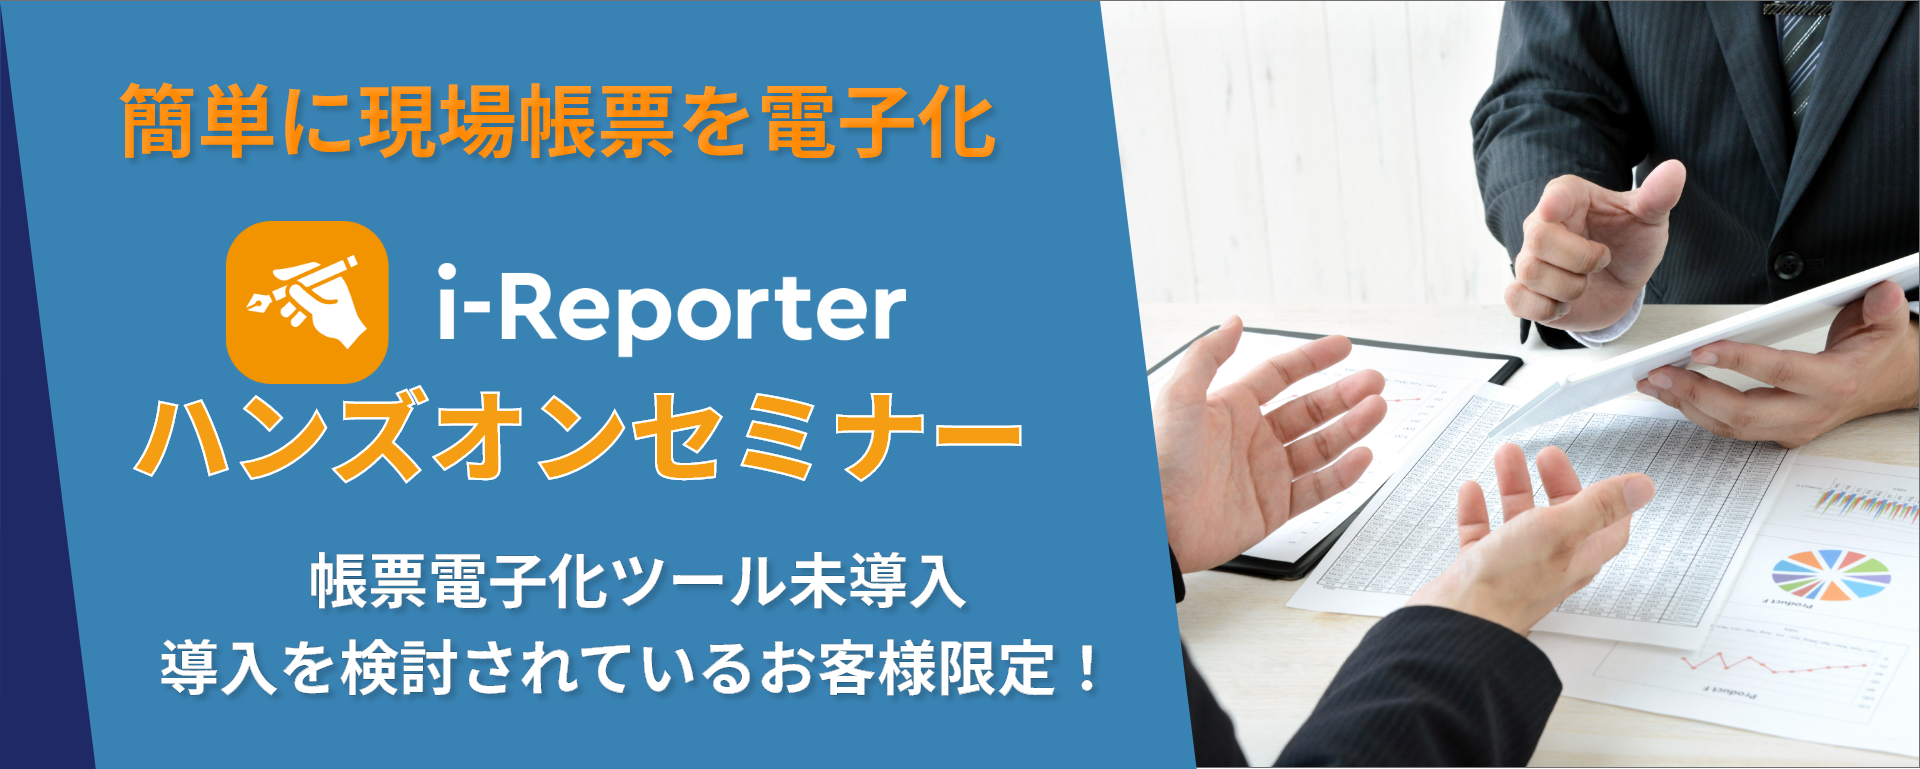 i-Reporterハンズオン×最新機能体験セミナー